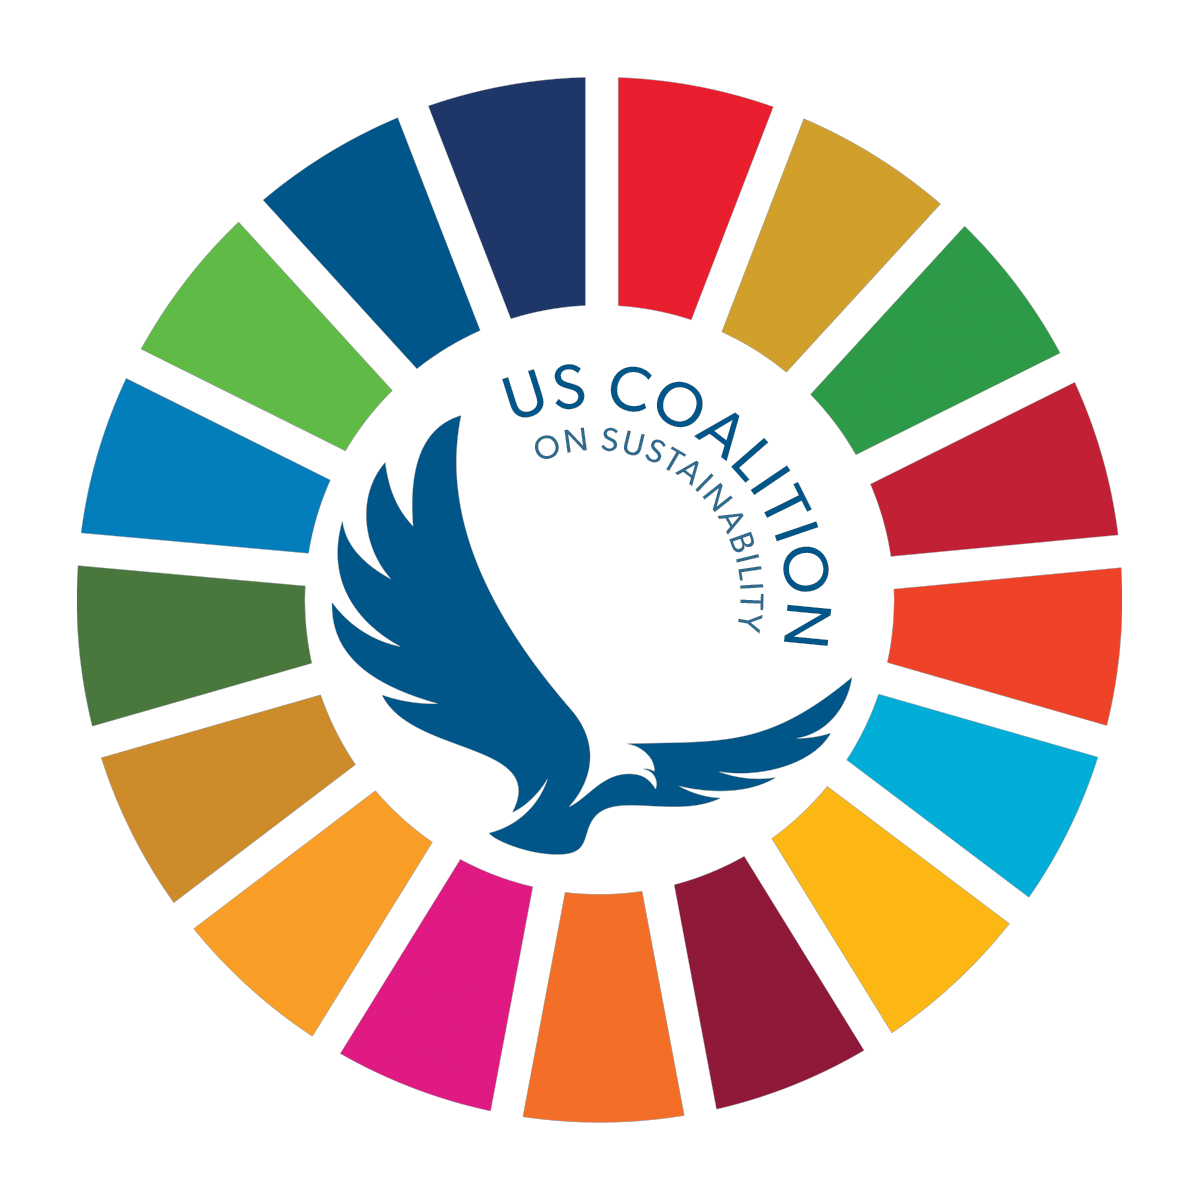 US Coalition on Sustainability logo